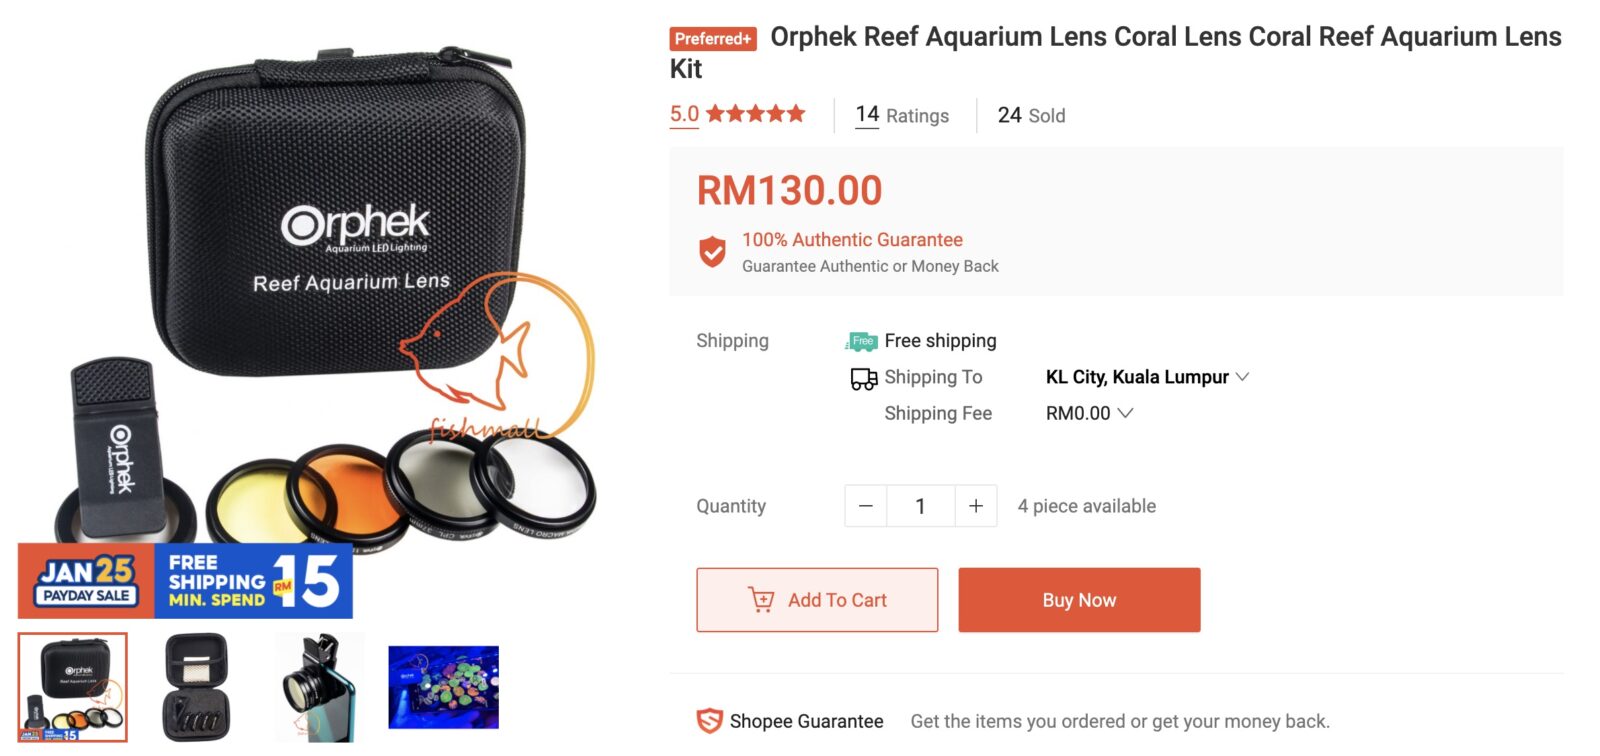 Acheter des lentilles corail orphek sur shopee